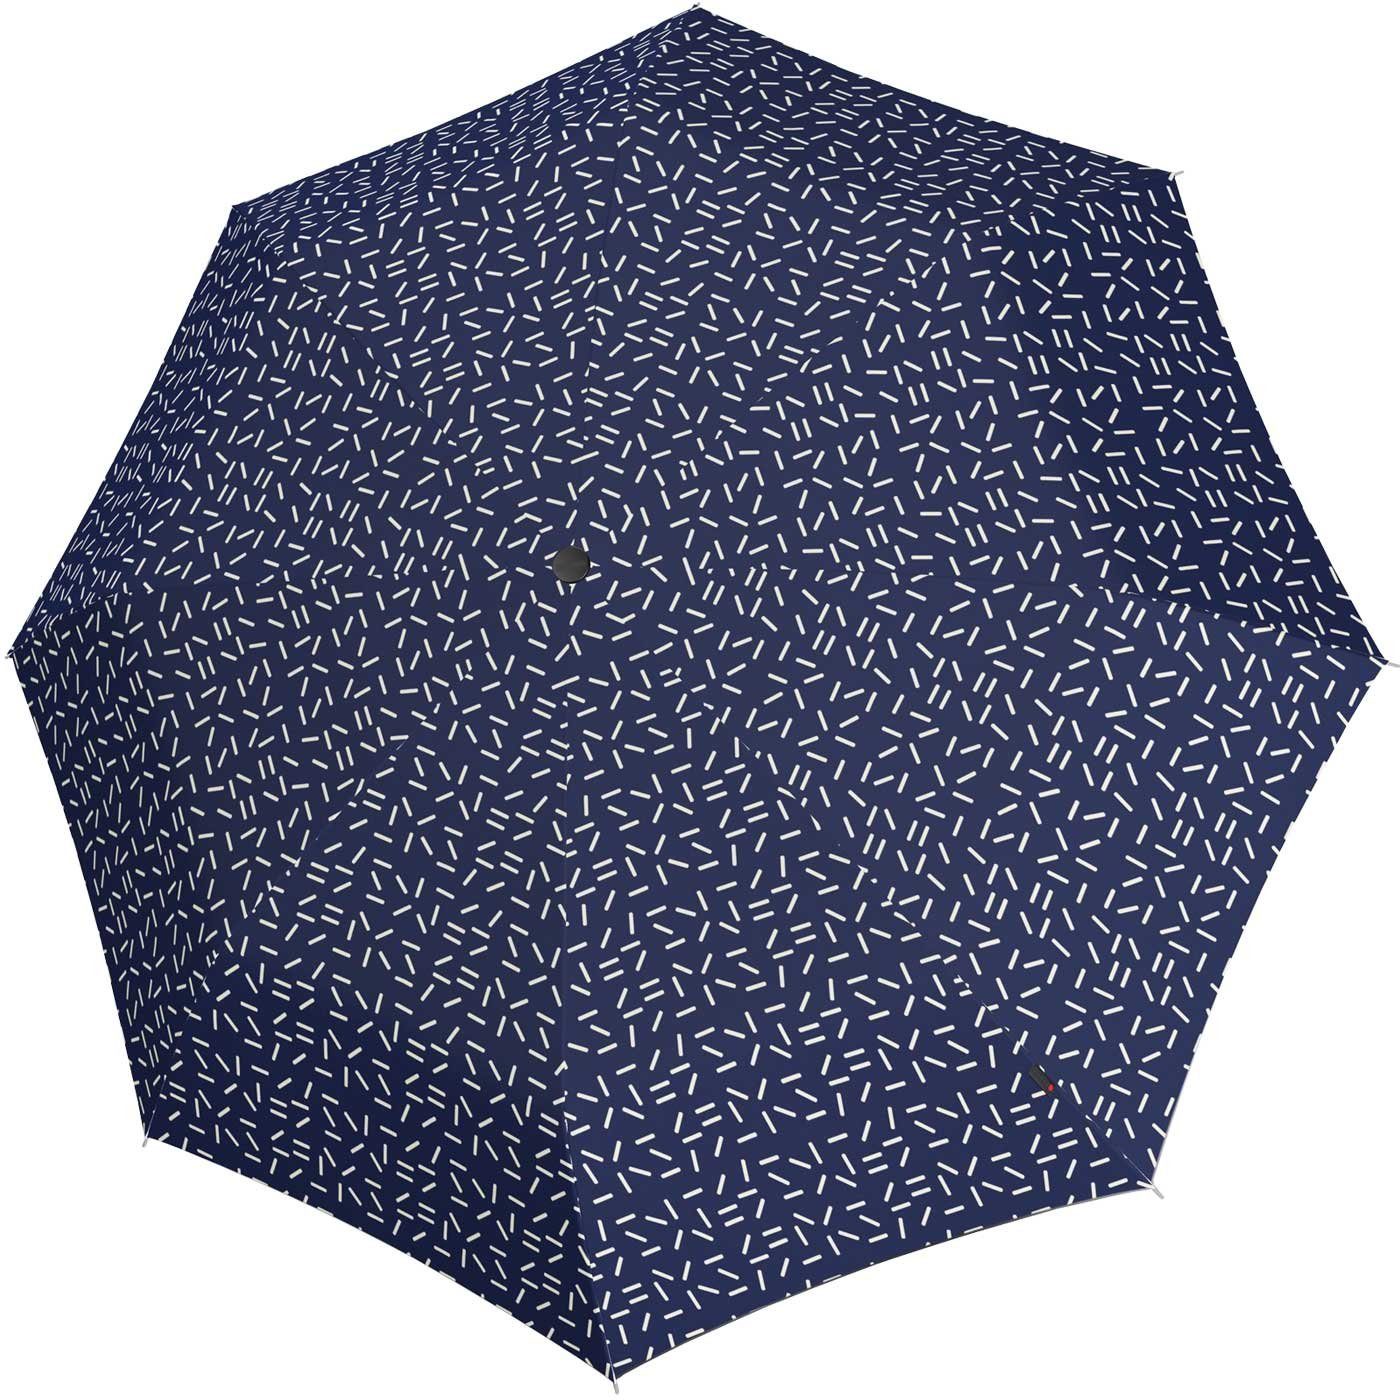 Knirps® - Medium Manual leicht stabil Taschenregenschirm und A.050 2Dance, blau